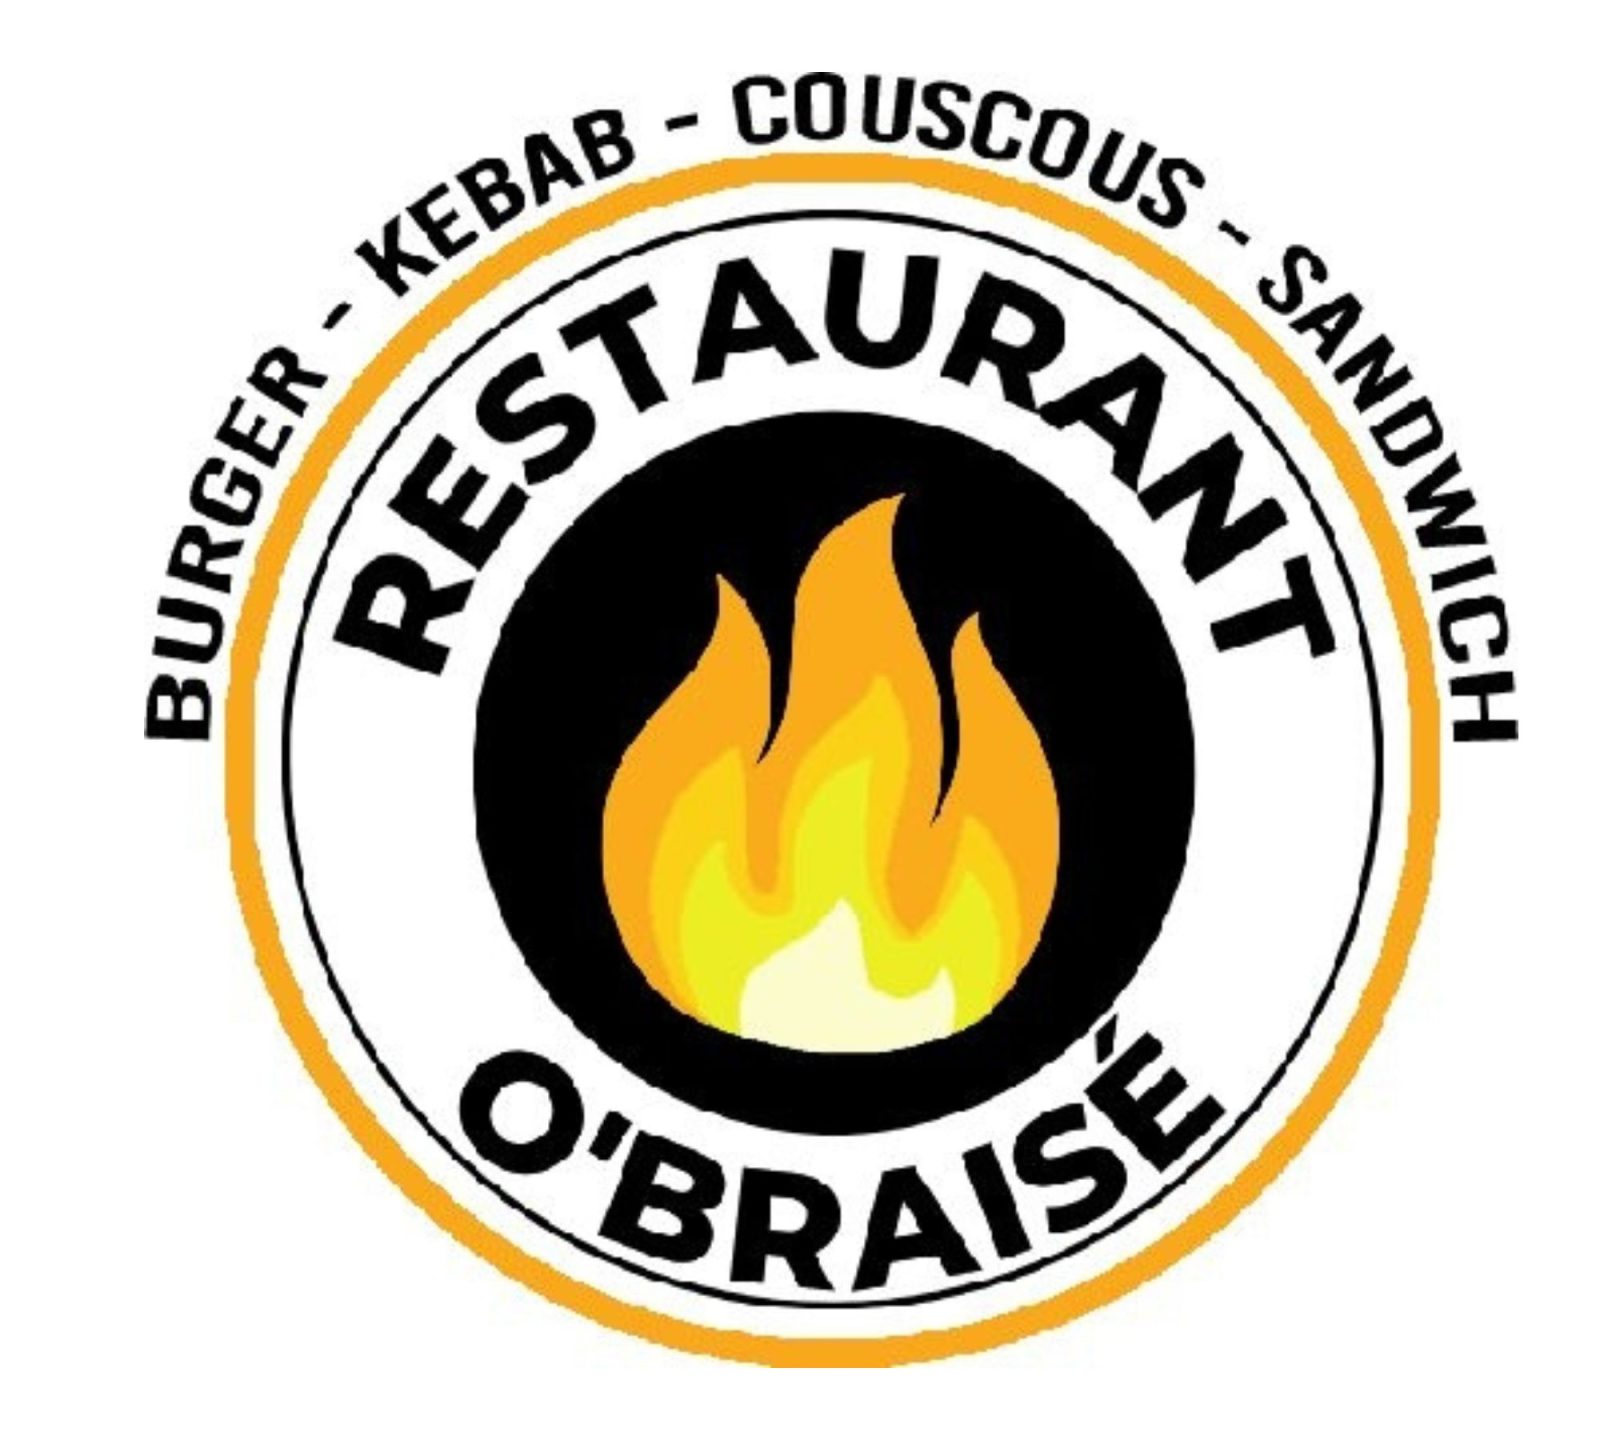 Restaurant O’braisé